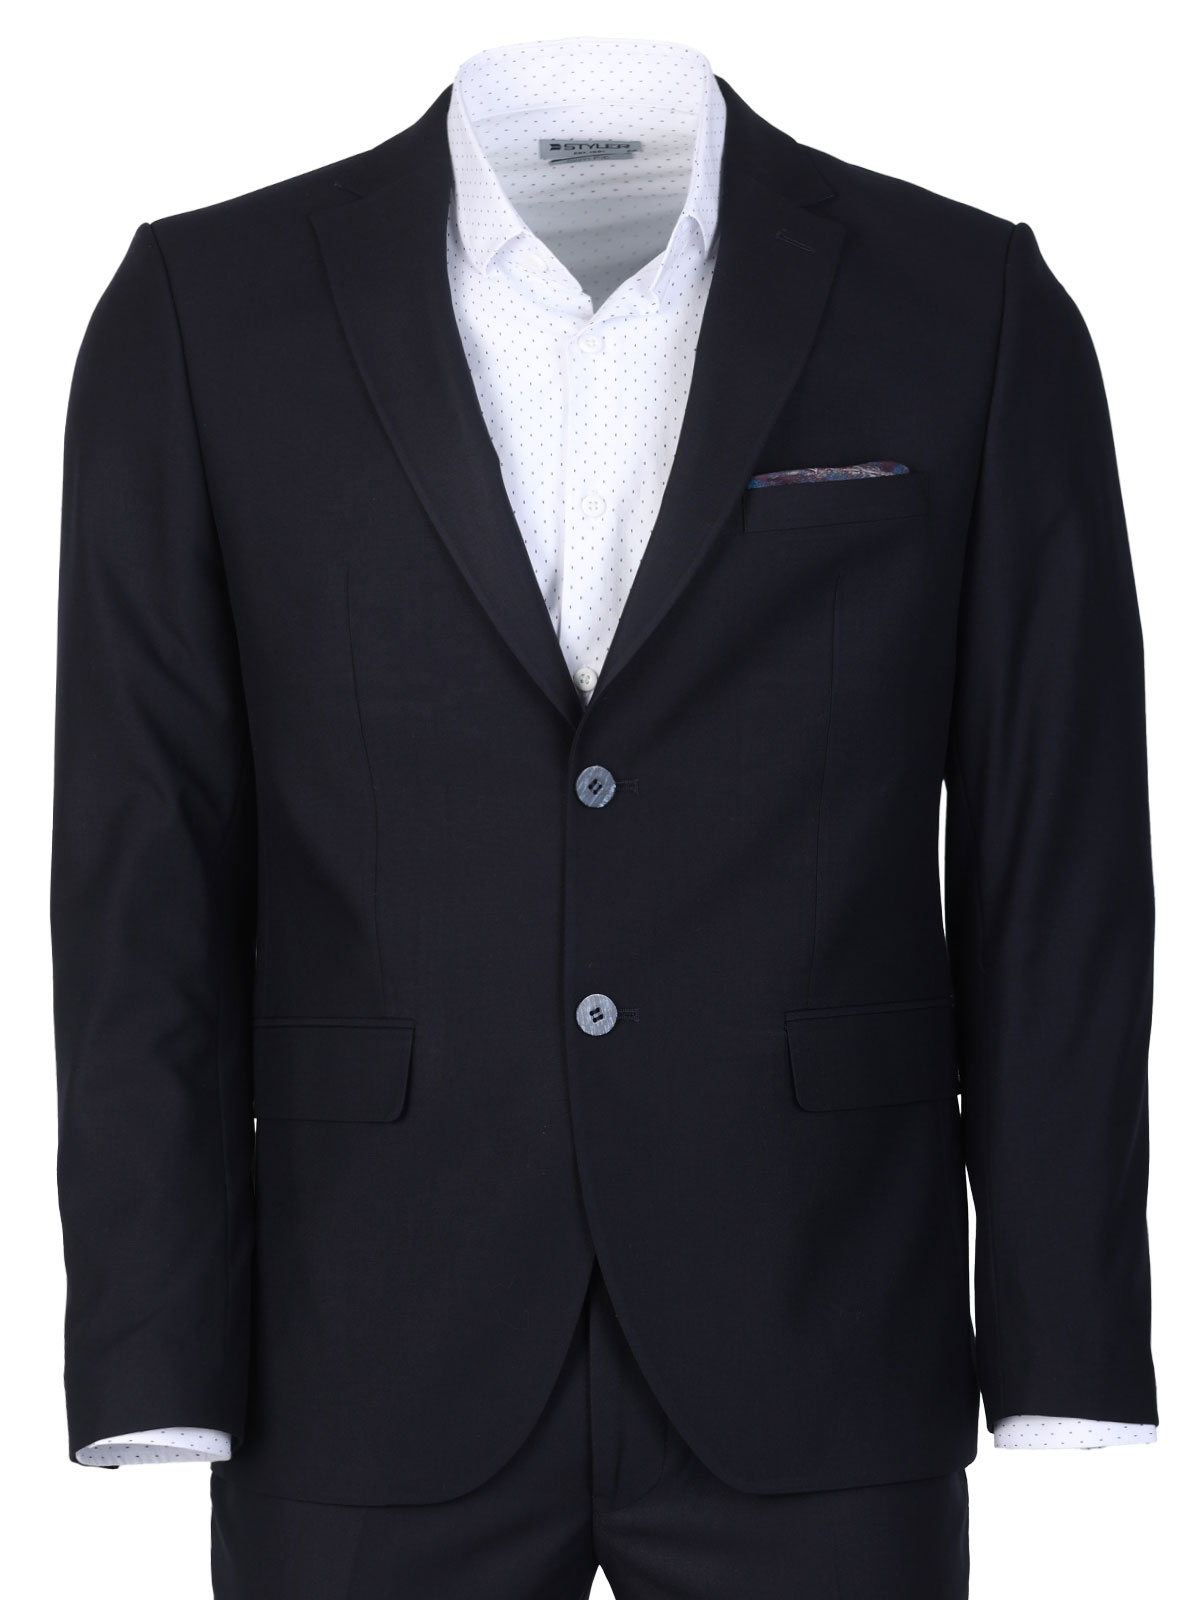 Κλασικό κοστούμι σε σκούρο μπλε - 68075 € 201.35 img3